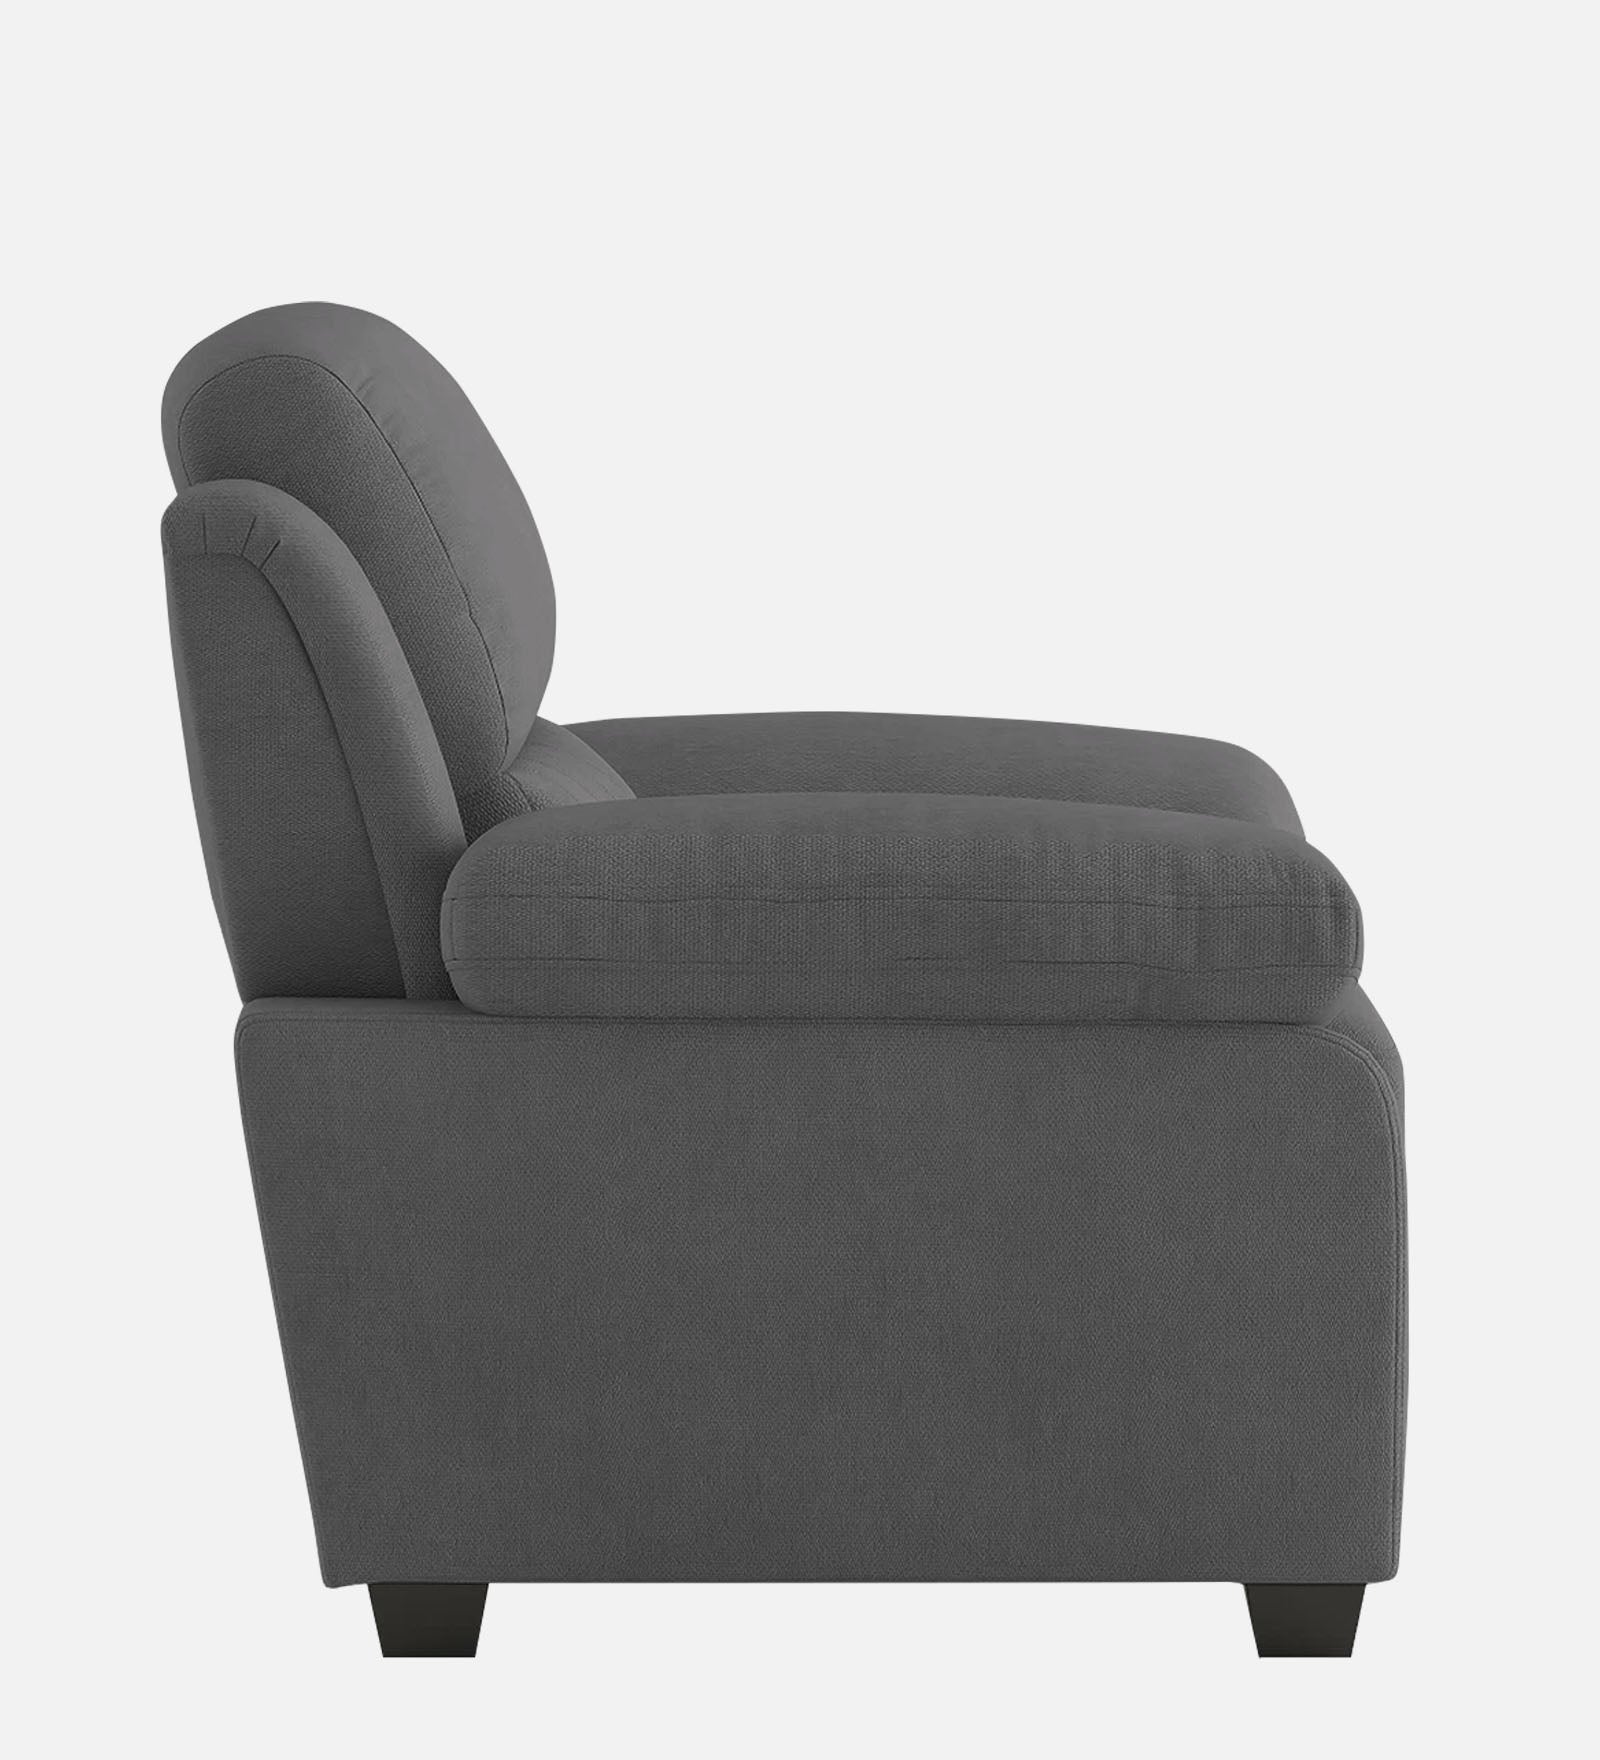 Miranda Velvet 1 Seater Sofa in Davy grey Colour